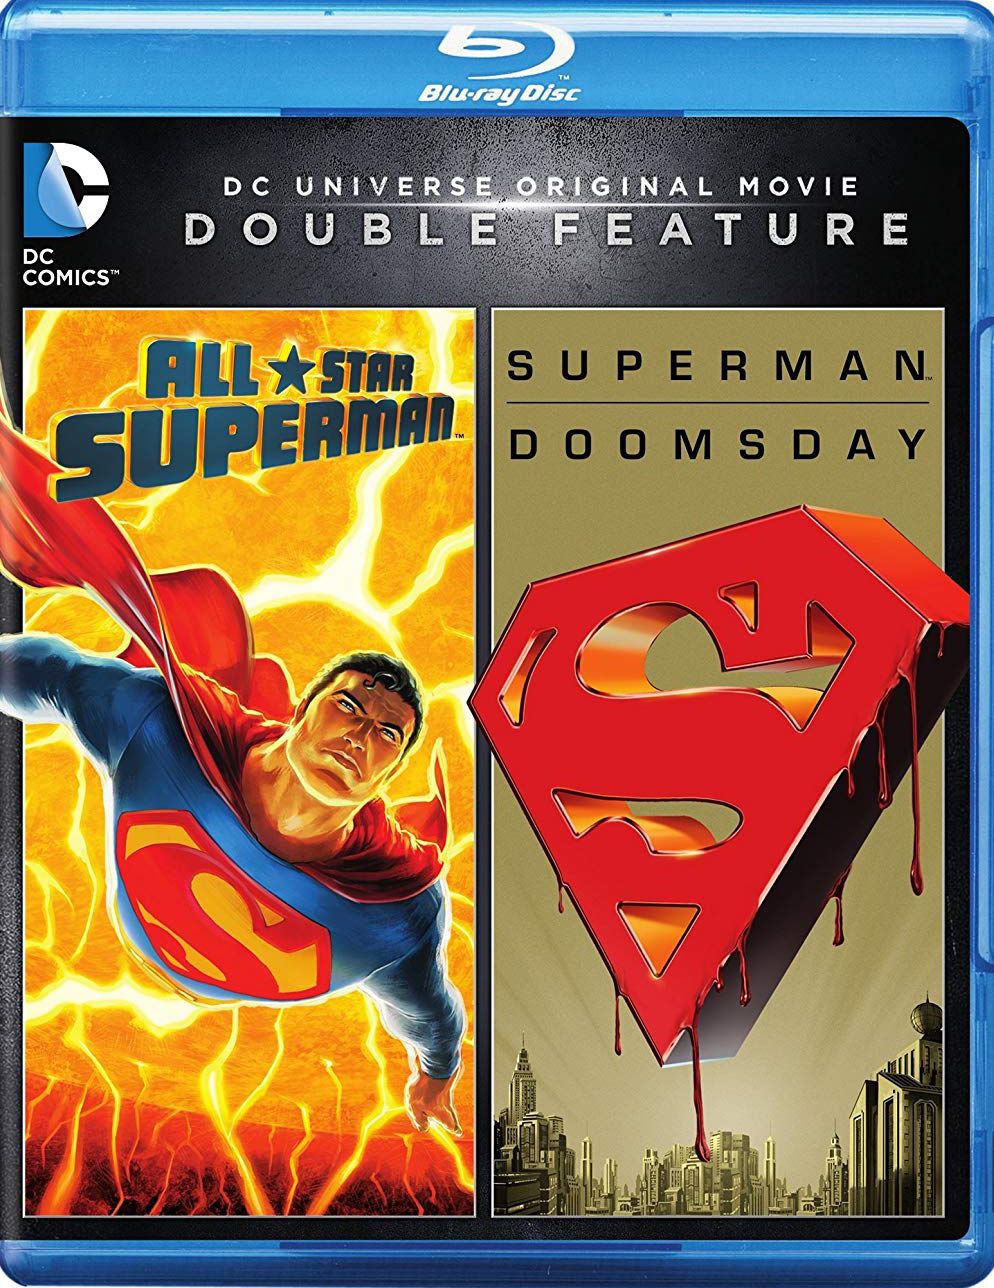 DC Universe Double Feature